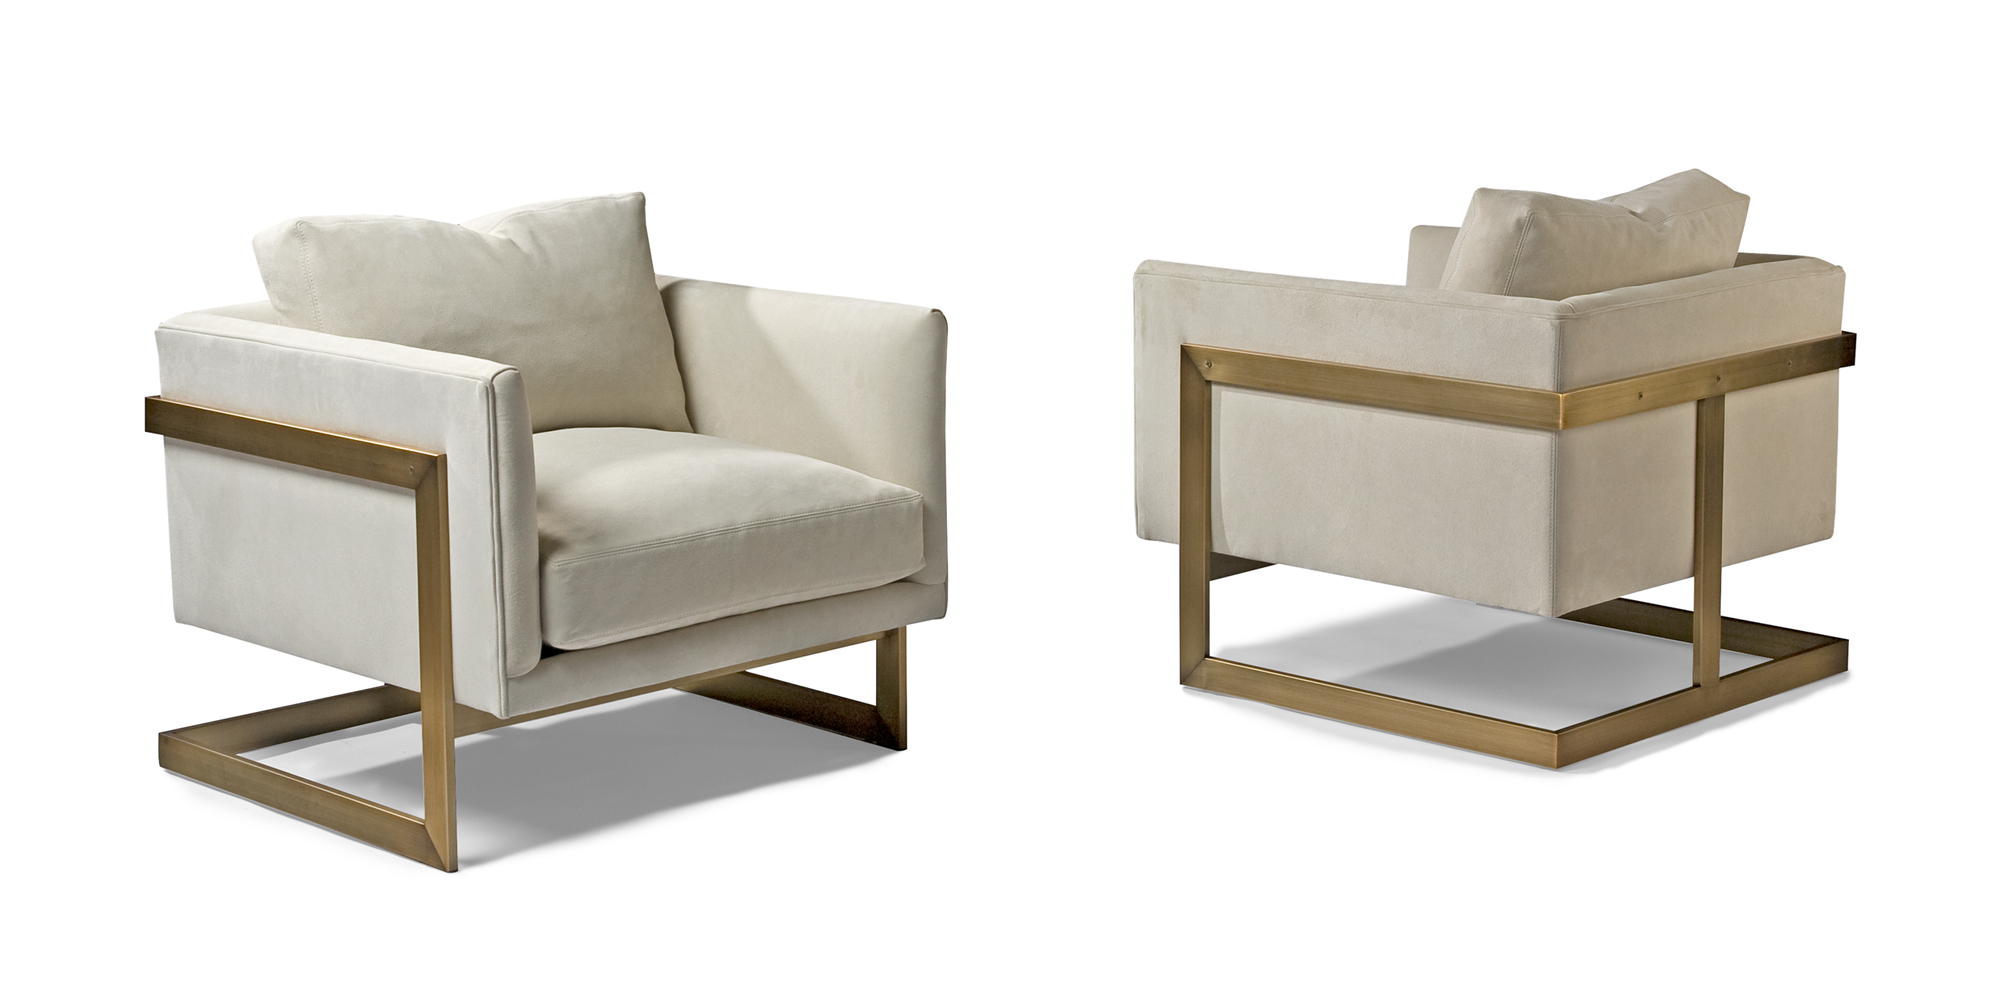 luxury classic furniture design